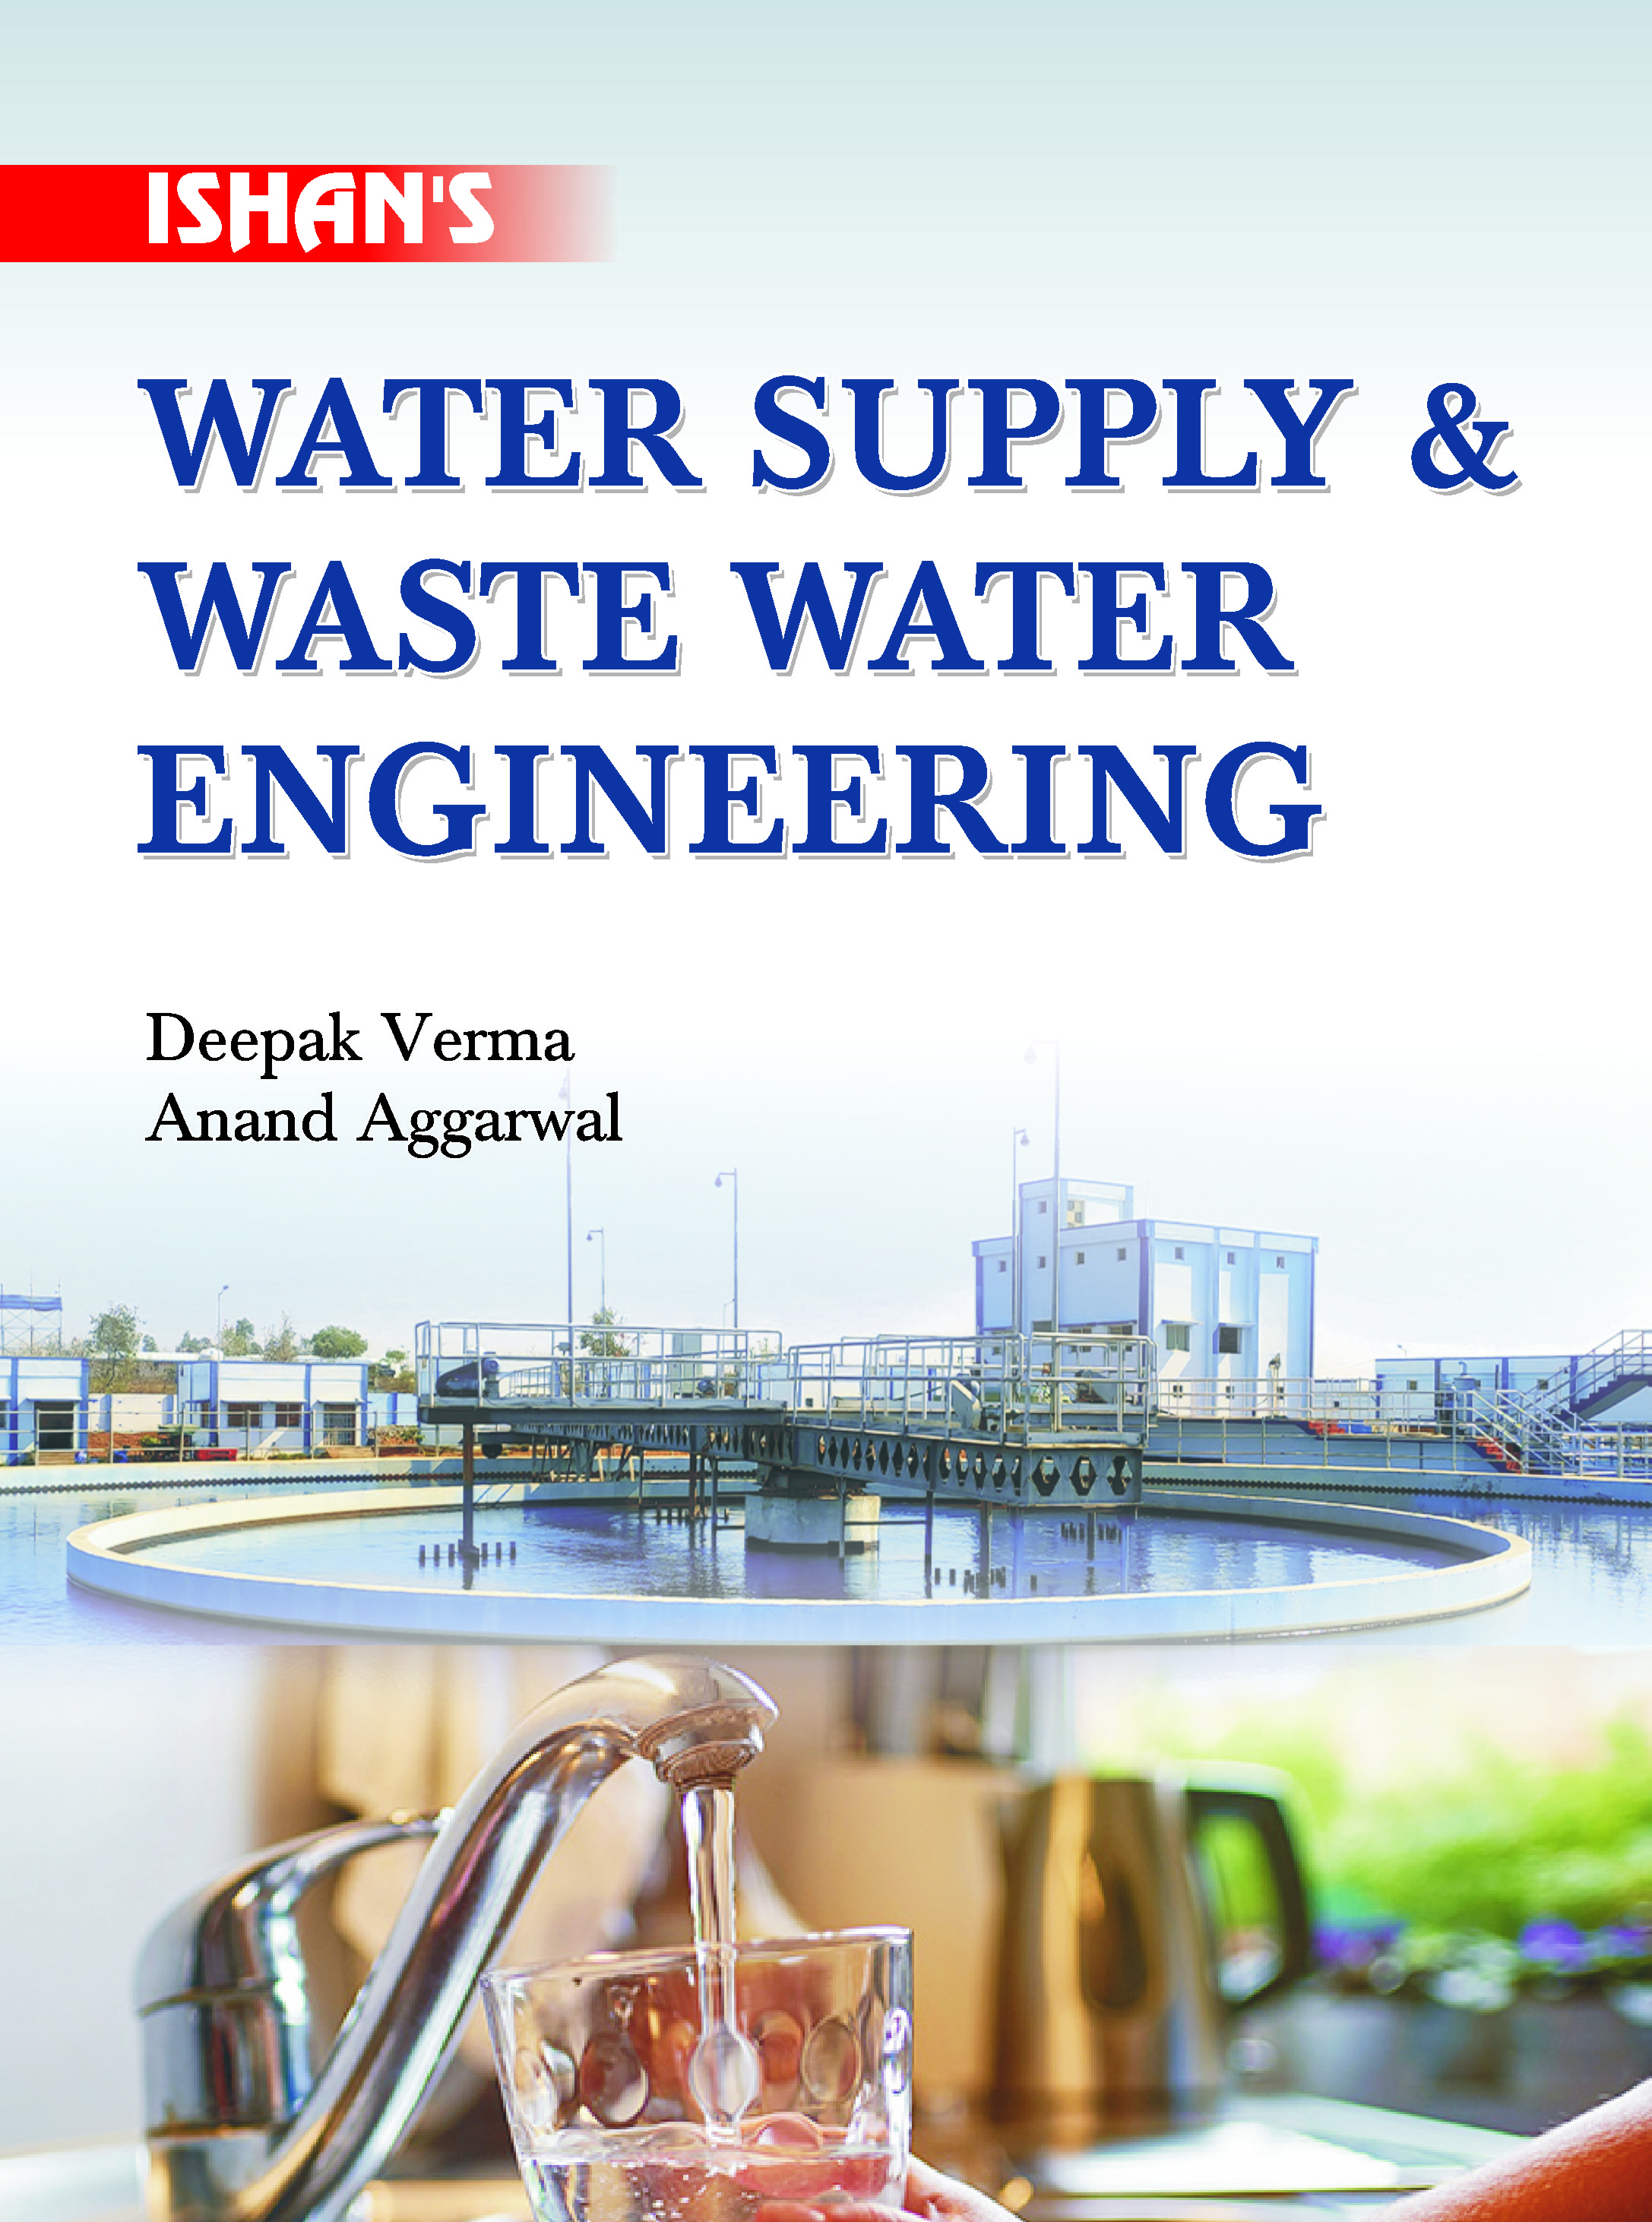 Water Supply & Waste Water Engineering 
(Public Health Engineering)